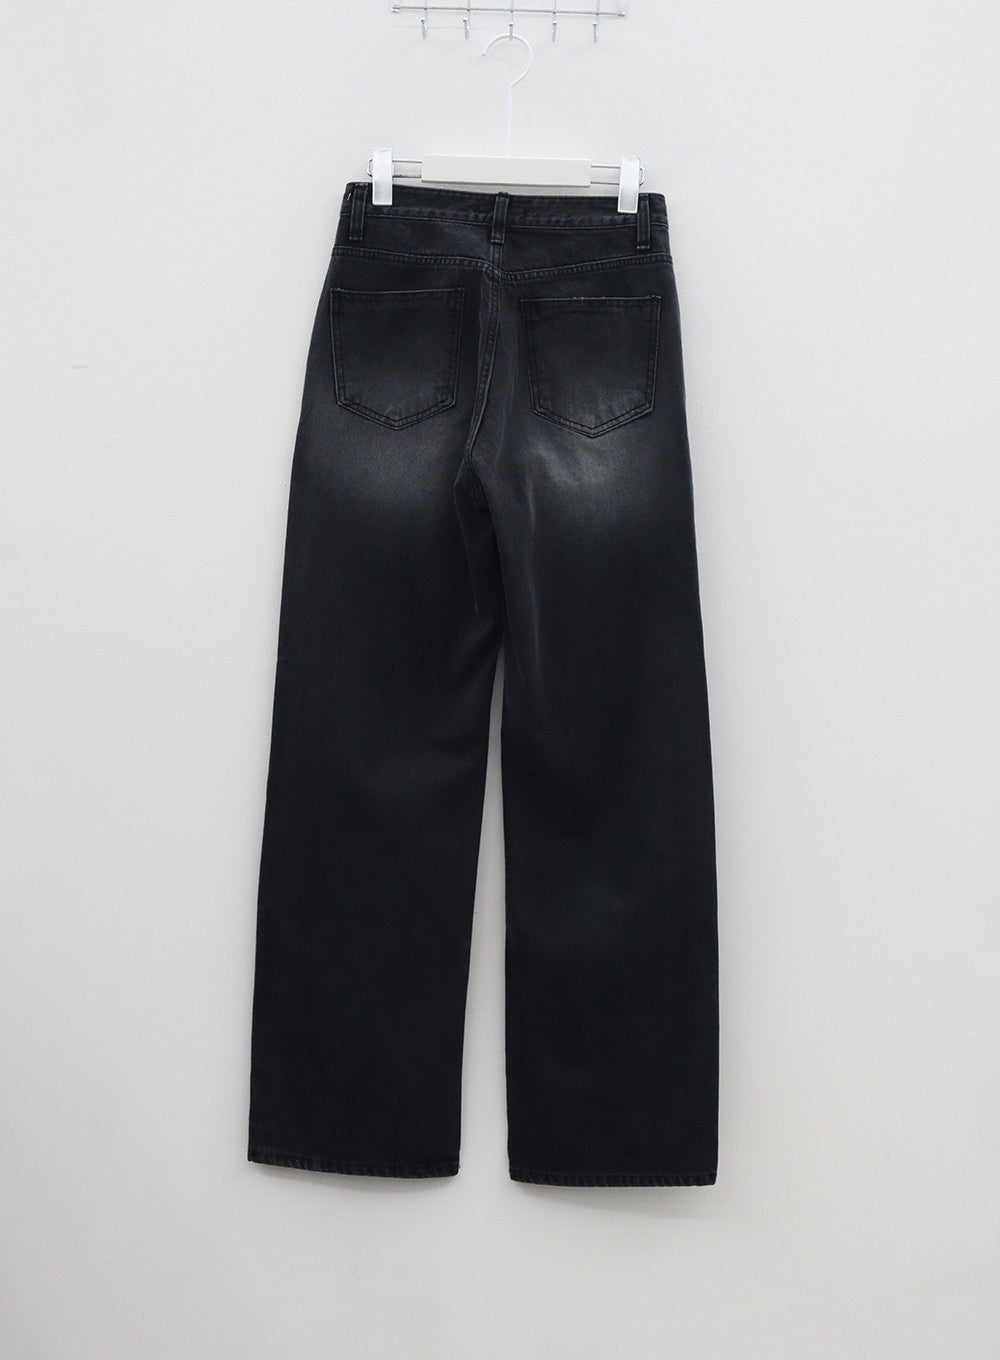 Wash Wide Leg Black Jeans BM317